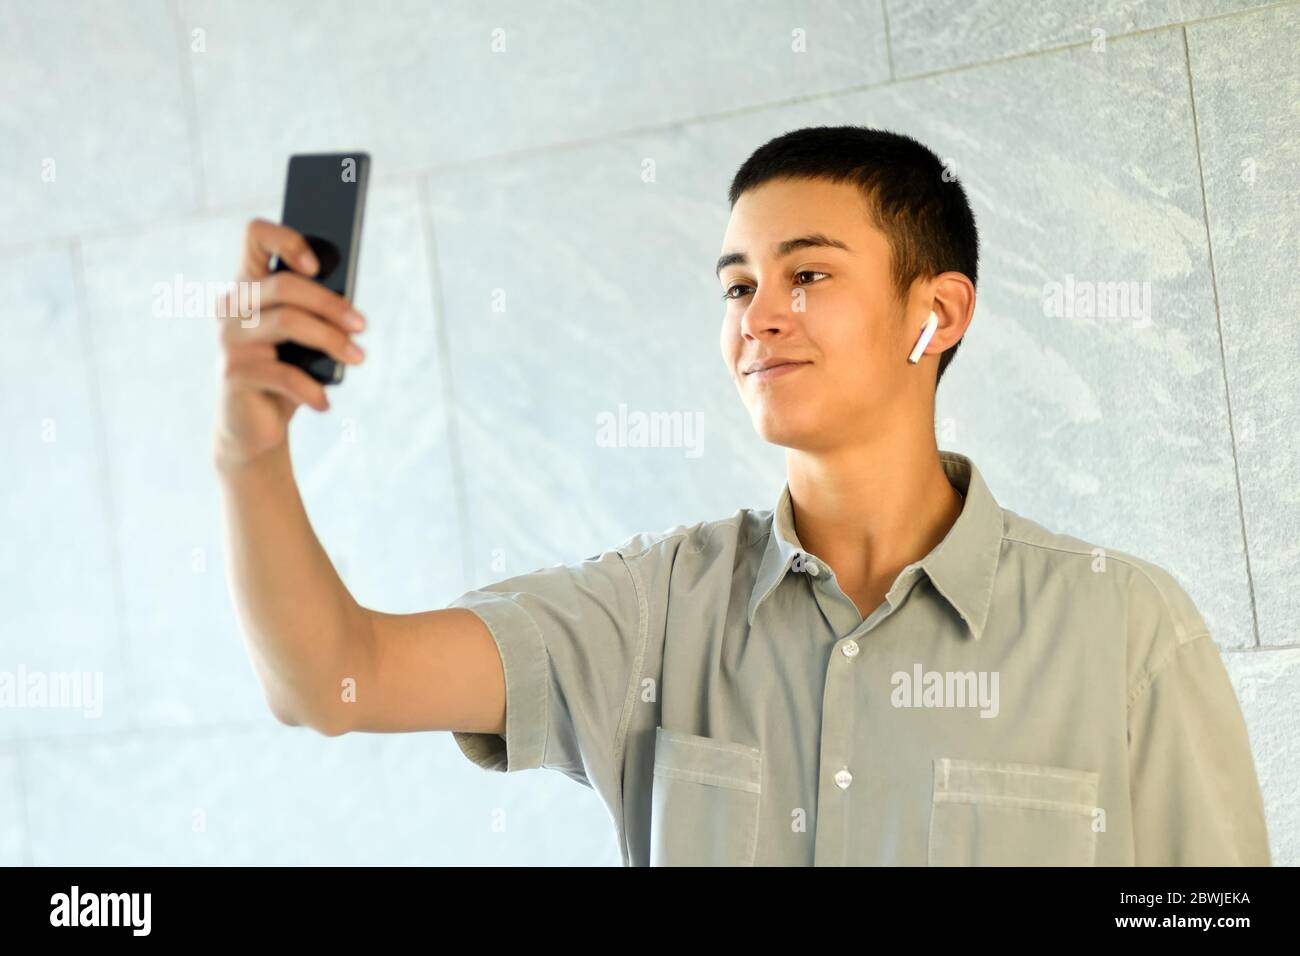 Junger Mann mit Ohrstöpsel, der ein Selfie auf seinem Handy macht, während er lächelnd für die Kamera gegen eine weiße kommerzielle Wand posiert Stockfoto